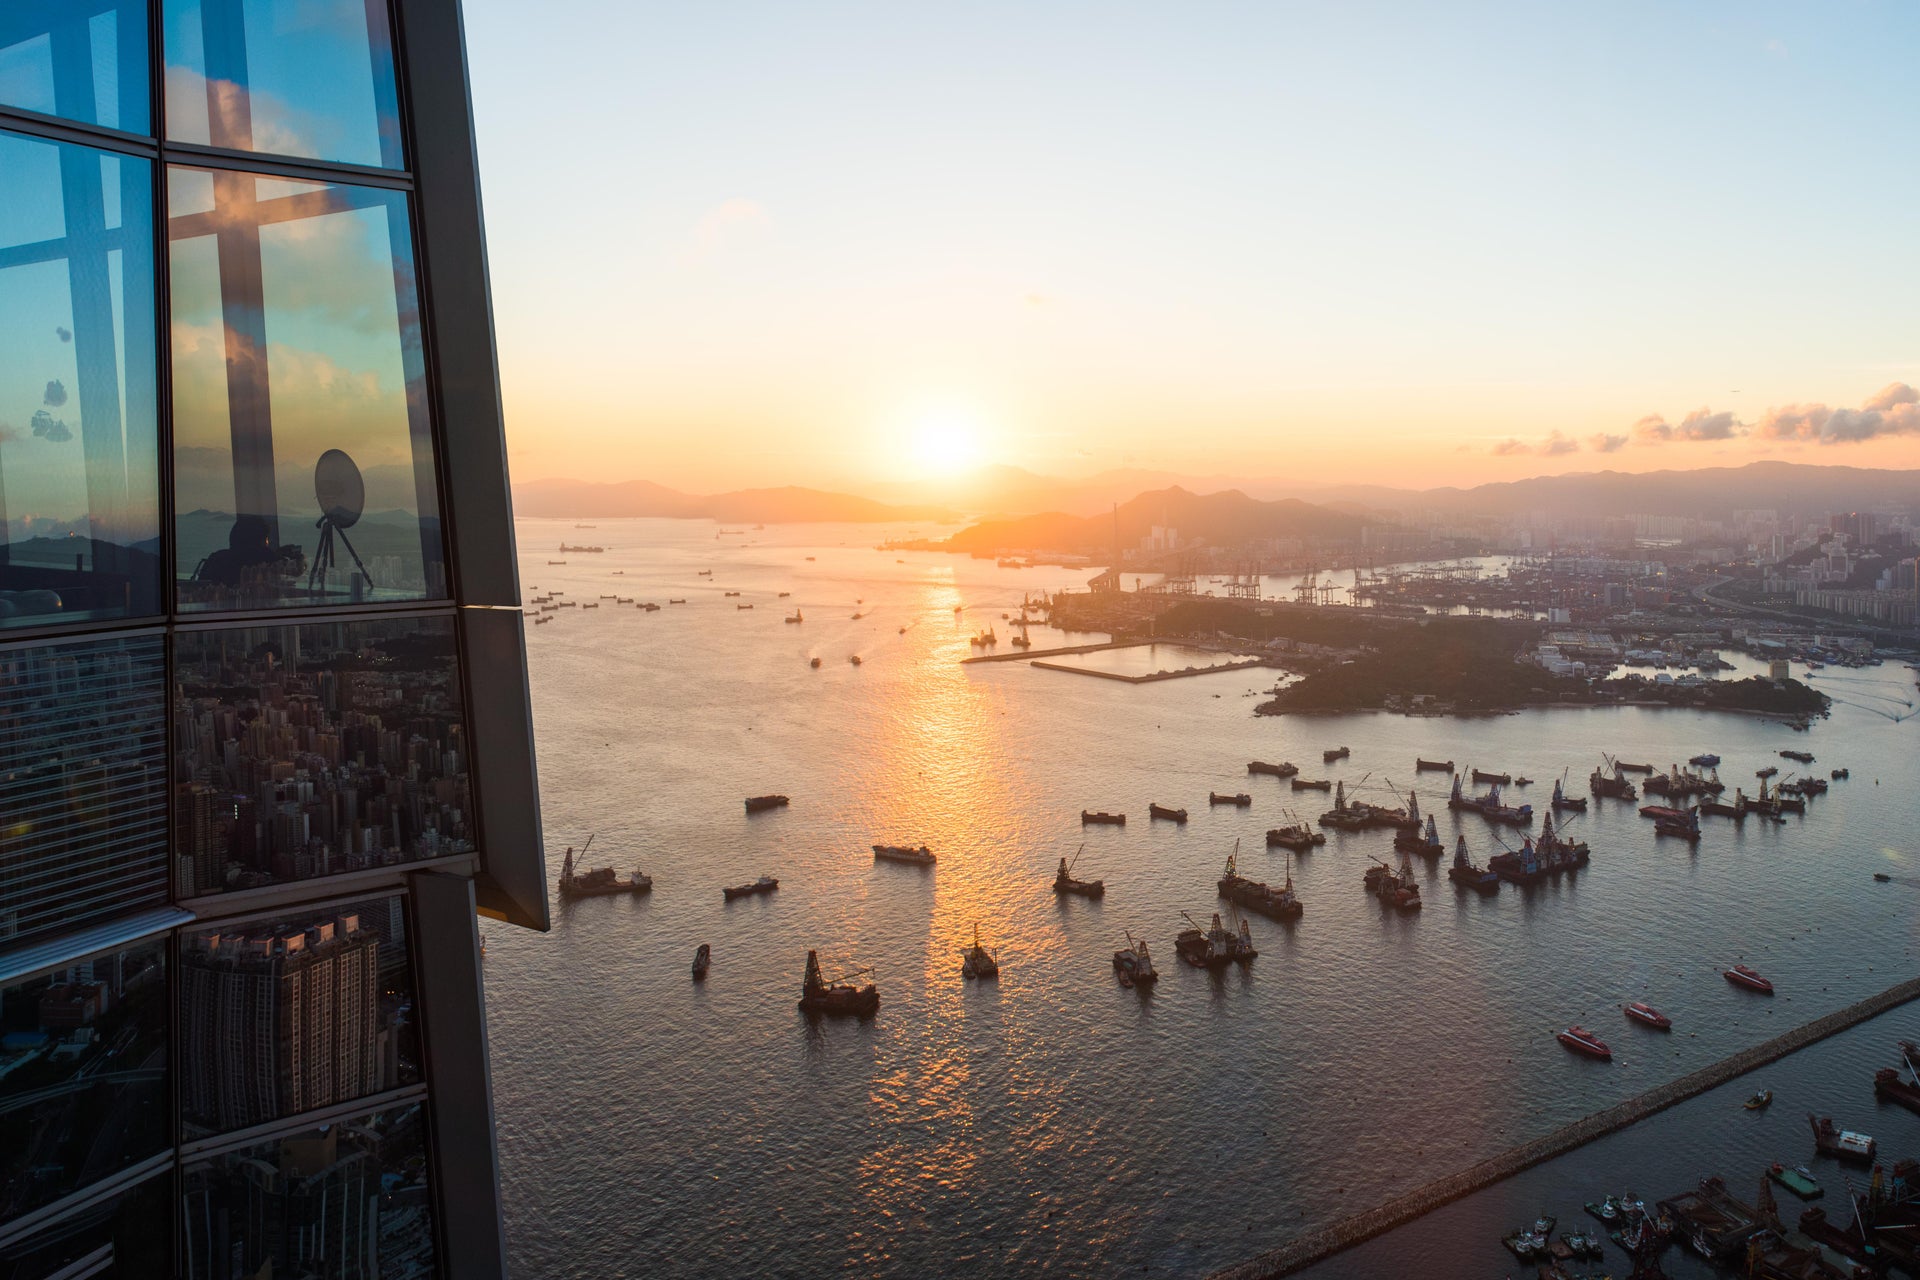 Sky100 Hong Kong Observation Deck